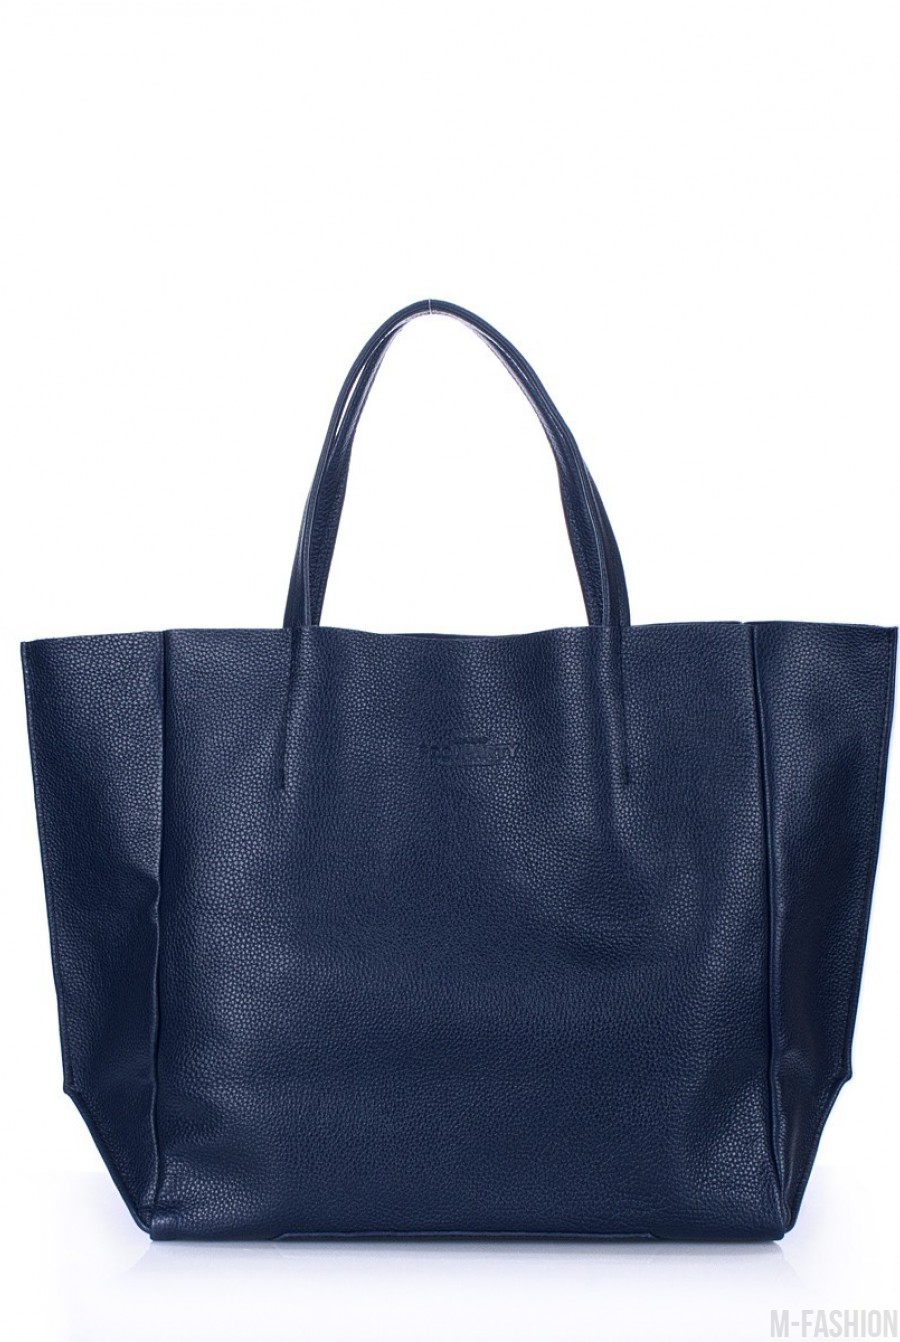 Кожаная синяя сумка Soho классического дизайна - Фото 1